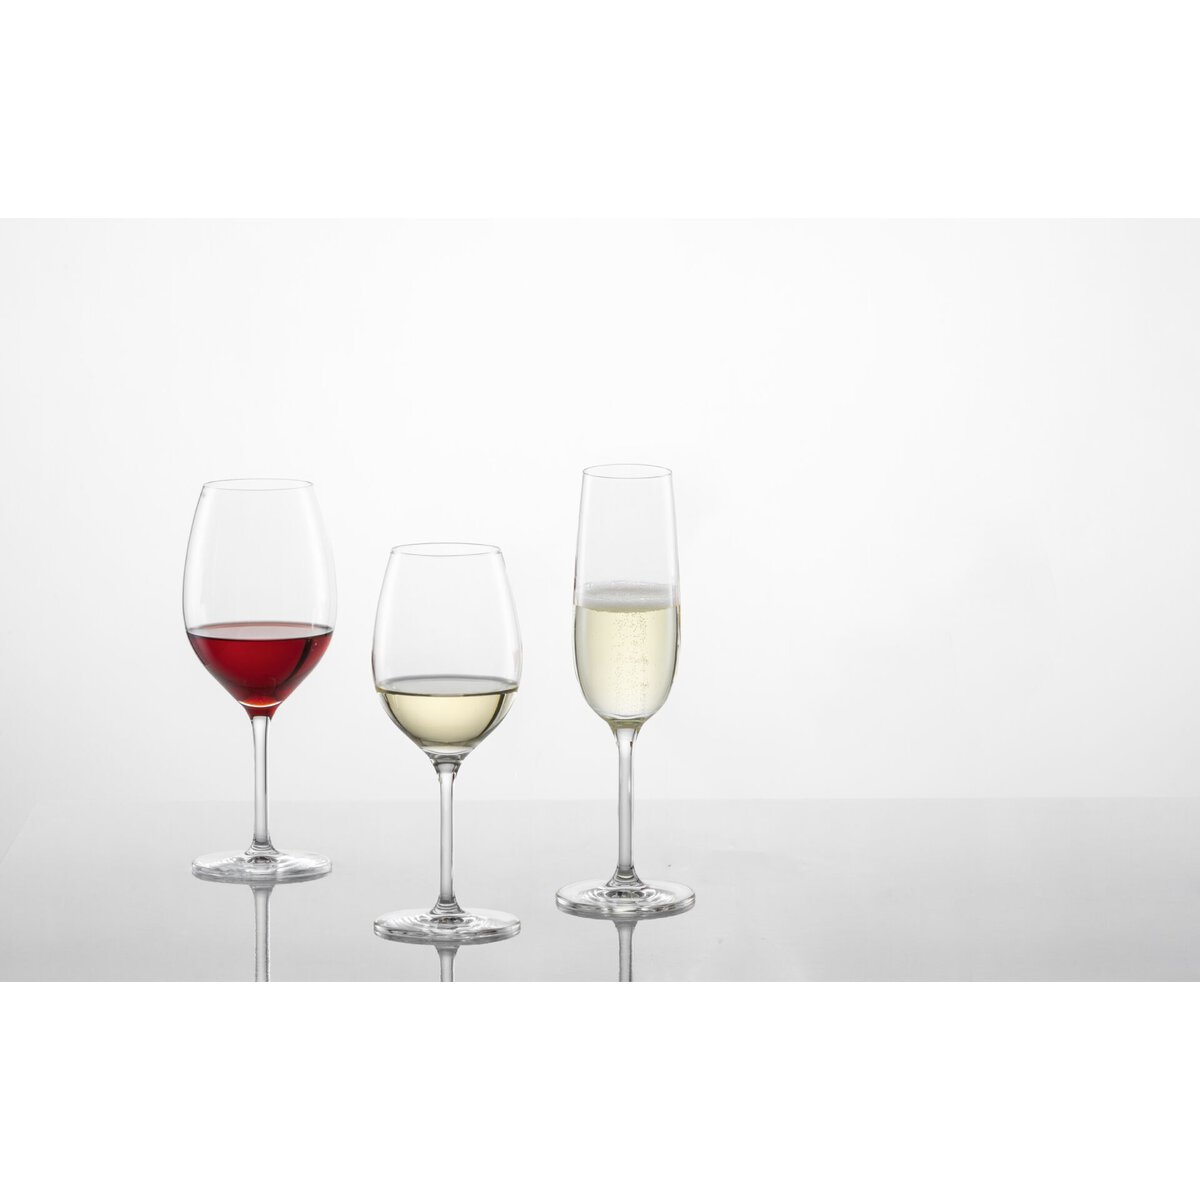 Glasserie "Banquet" Rotweinglas 475ml (4)